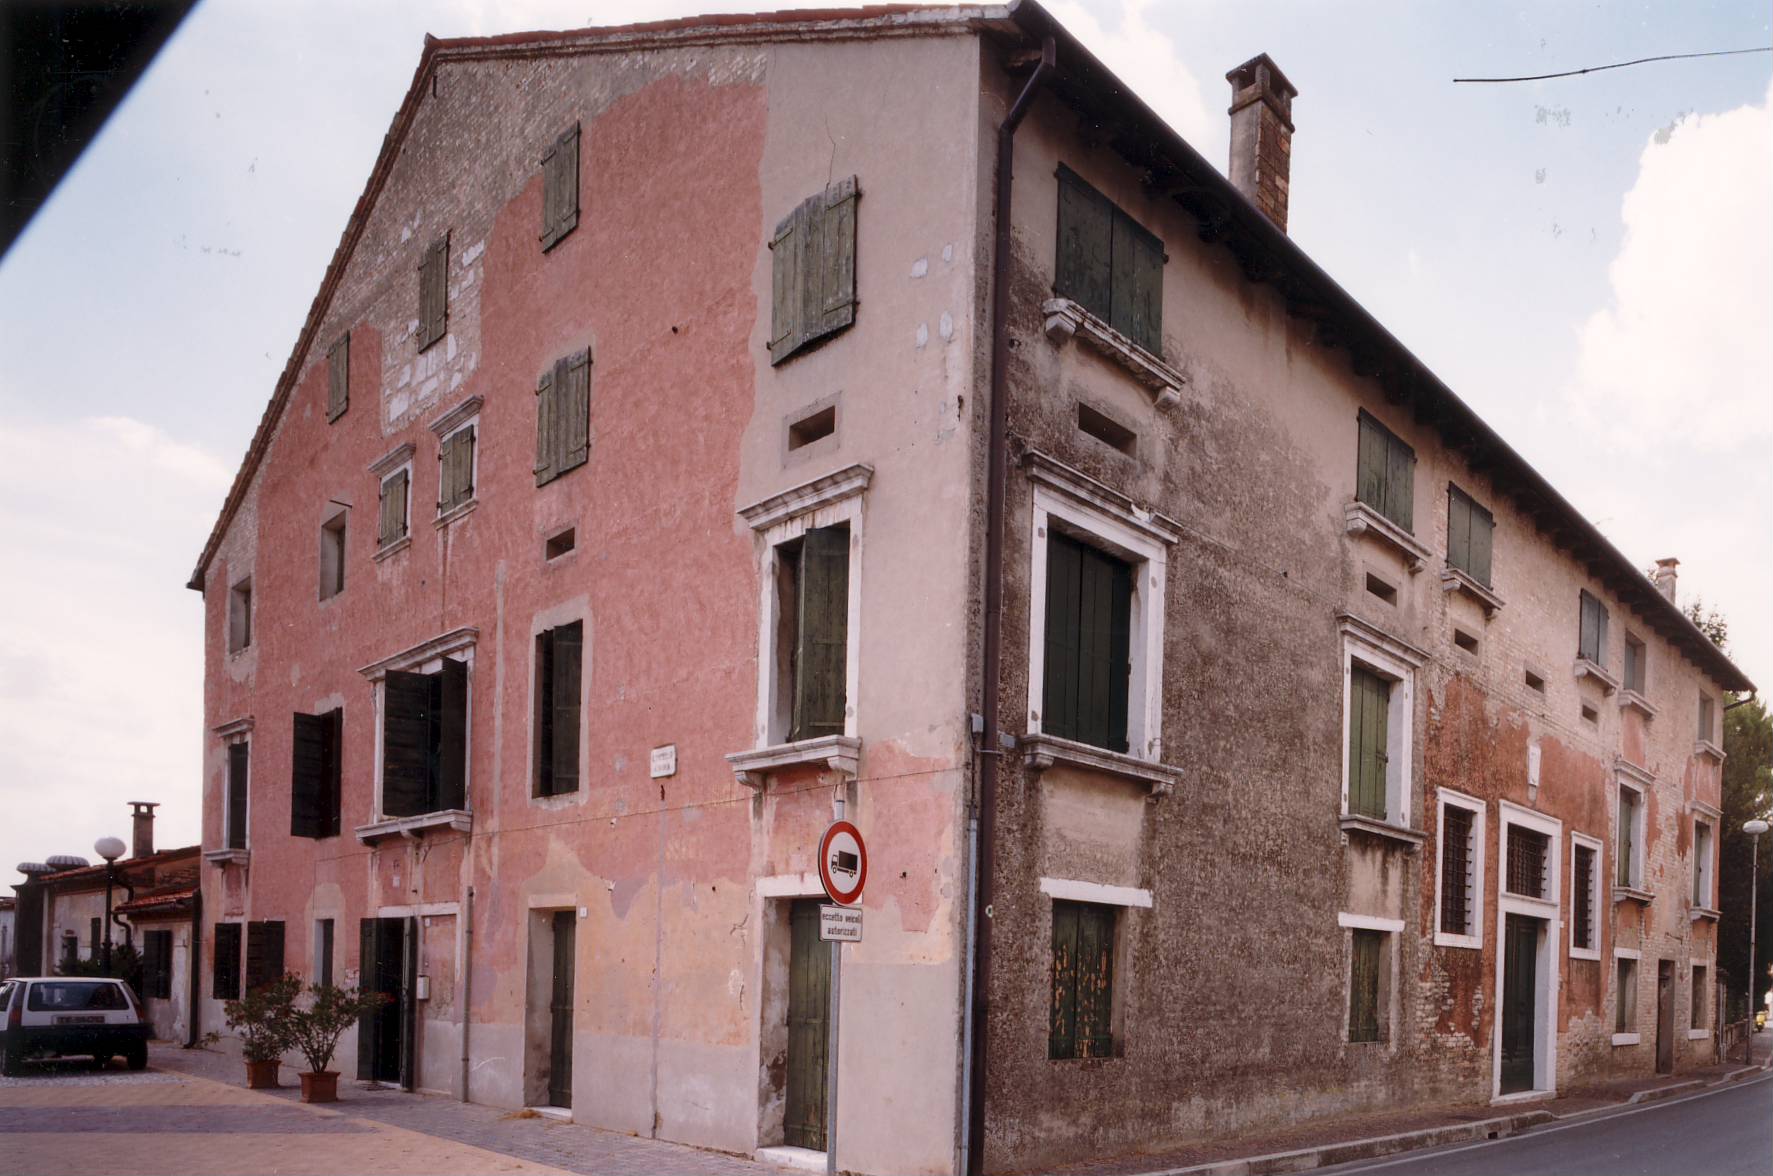 Palazzo Michiel-Saccomani (palazzo) - Meduna di Livenza (TV)  (XVI-XVII)